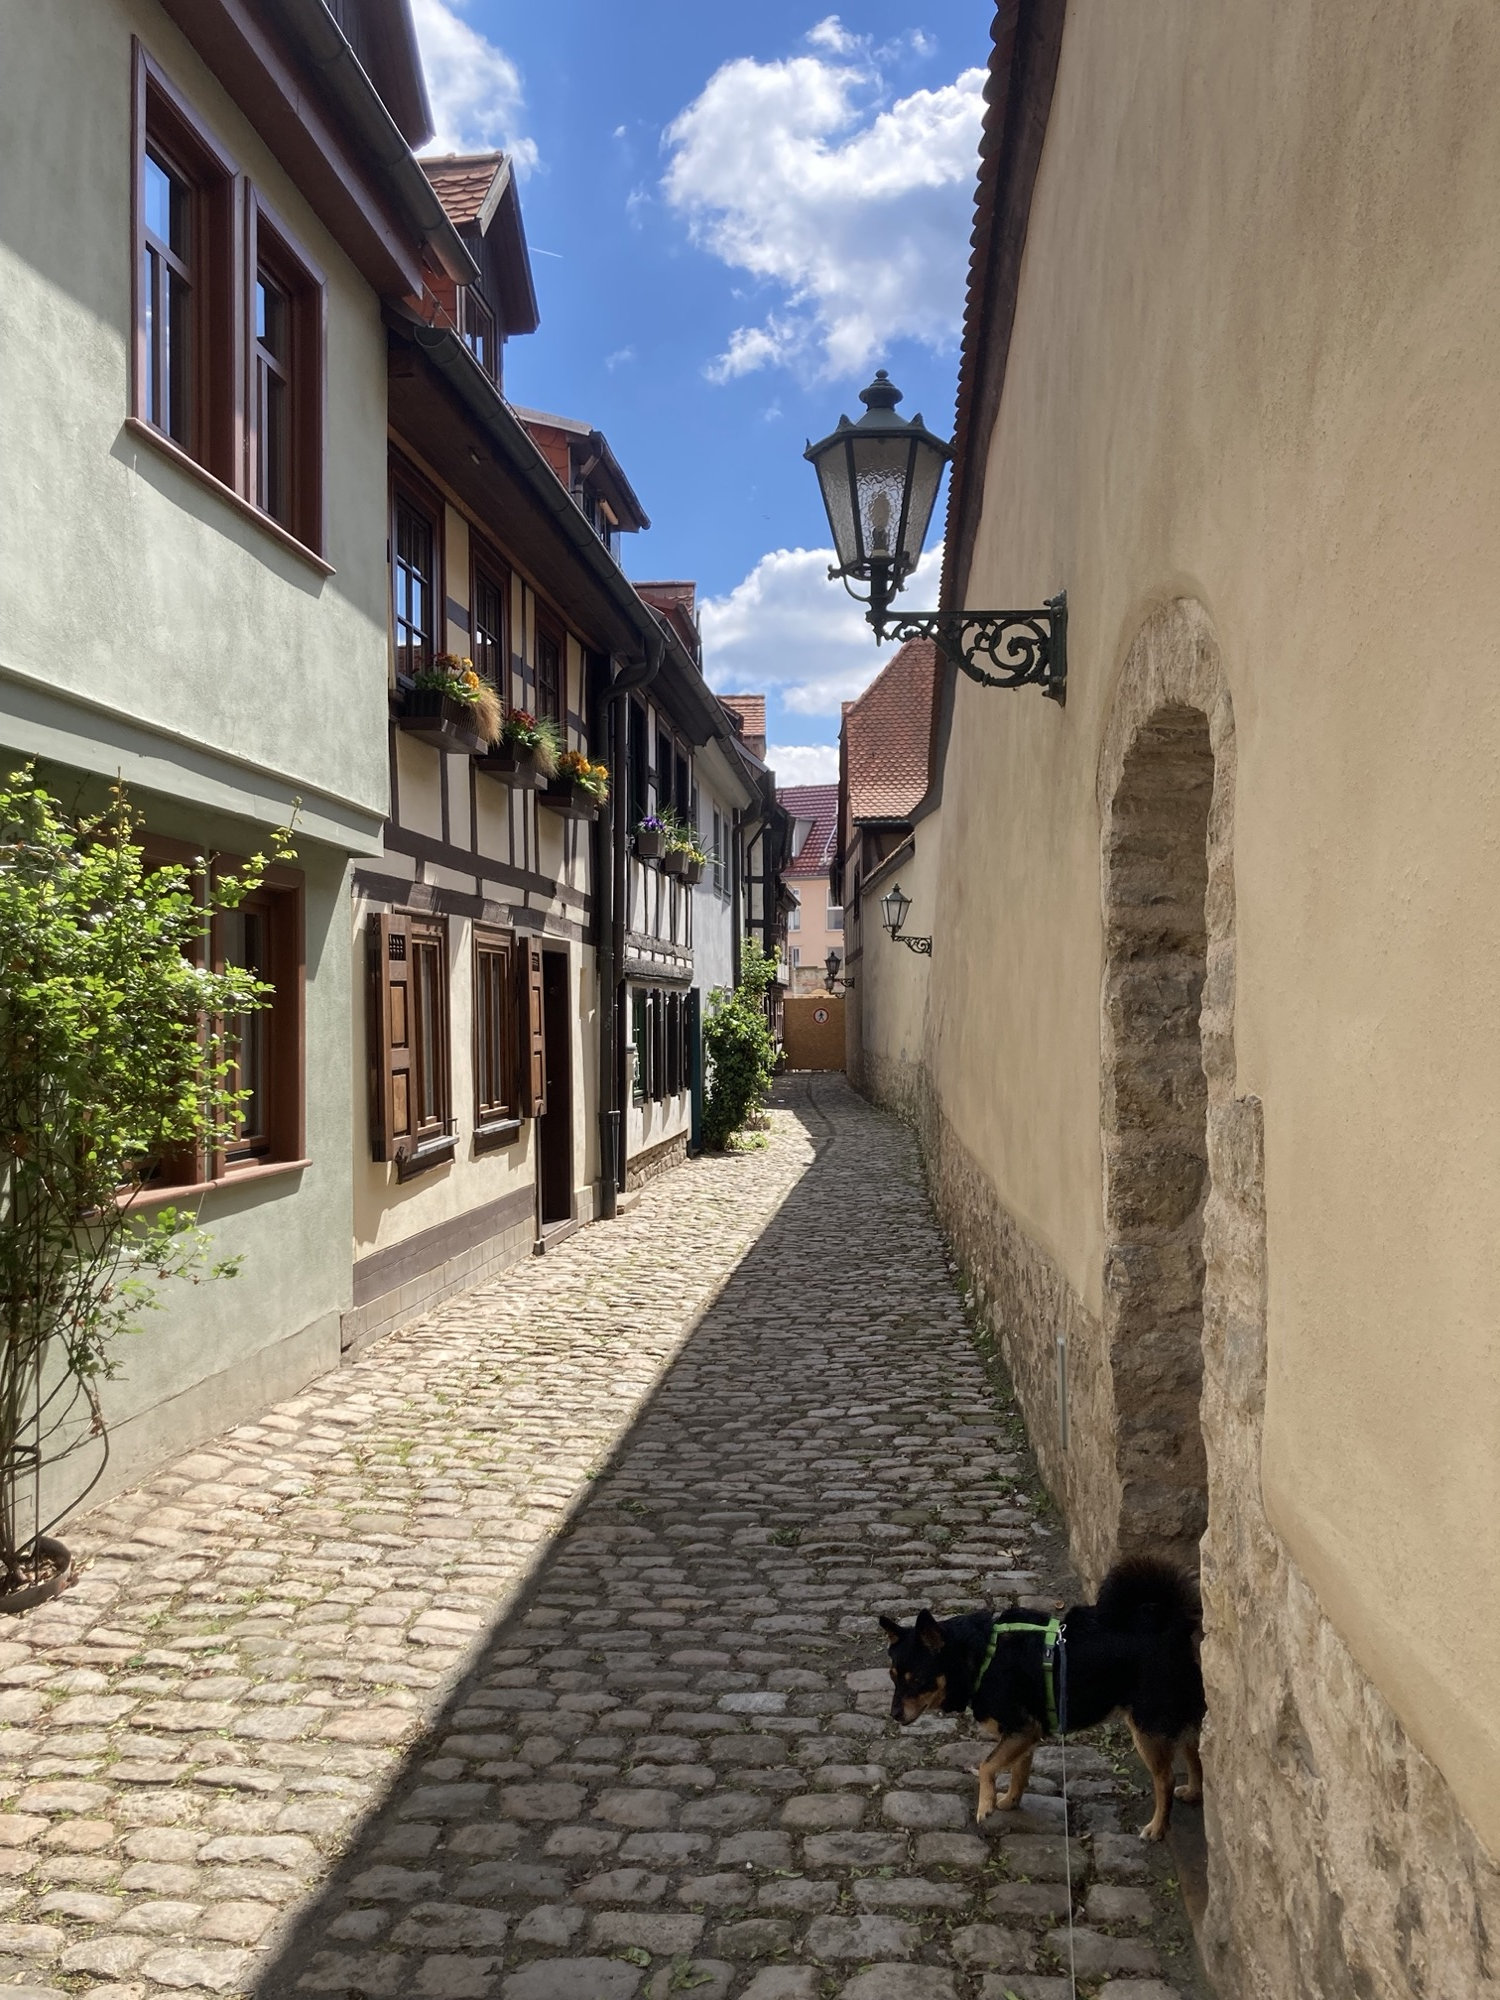 Gasse in der Altstadt, rechts die Mauer des Augustinerklosters, links Wohnhäuser mit hölzernen Fensterläden und Blumenkästen, die linke Hälfte der Gasse liegt in der Sonne, die rechte im Schatten, rechts im Vordergrund schaut ein schwarzer Hund aus einem gemauerten Torbogen